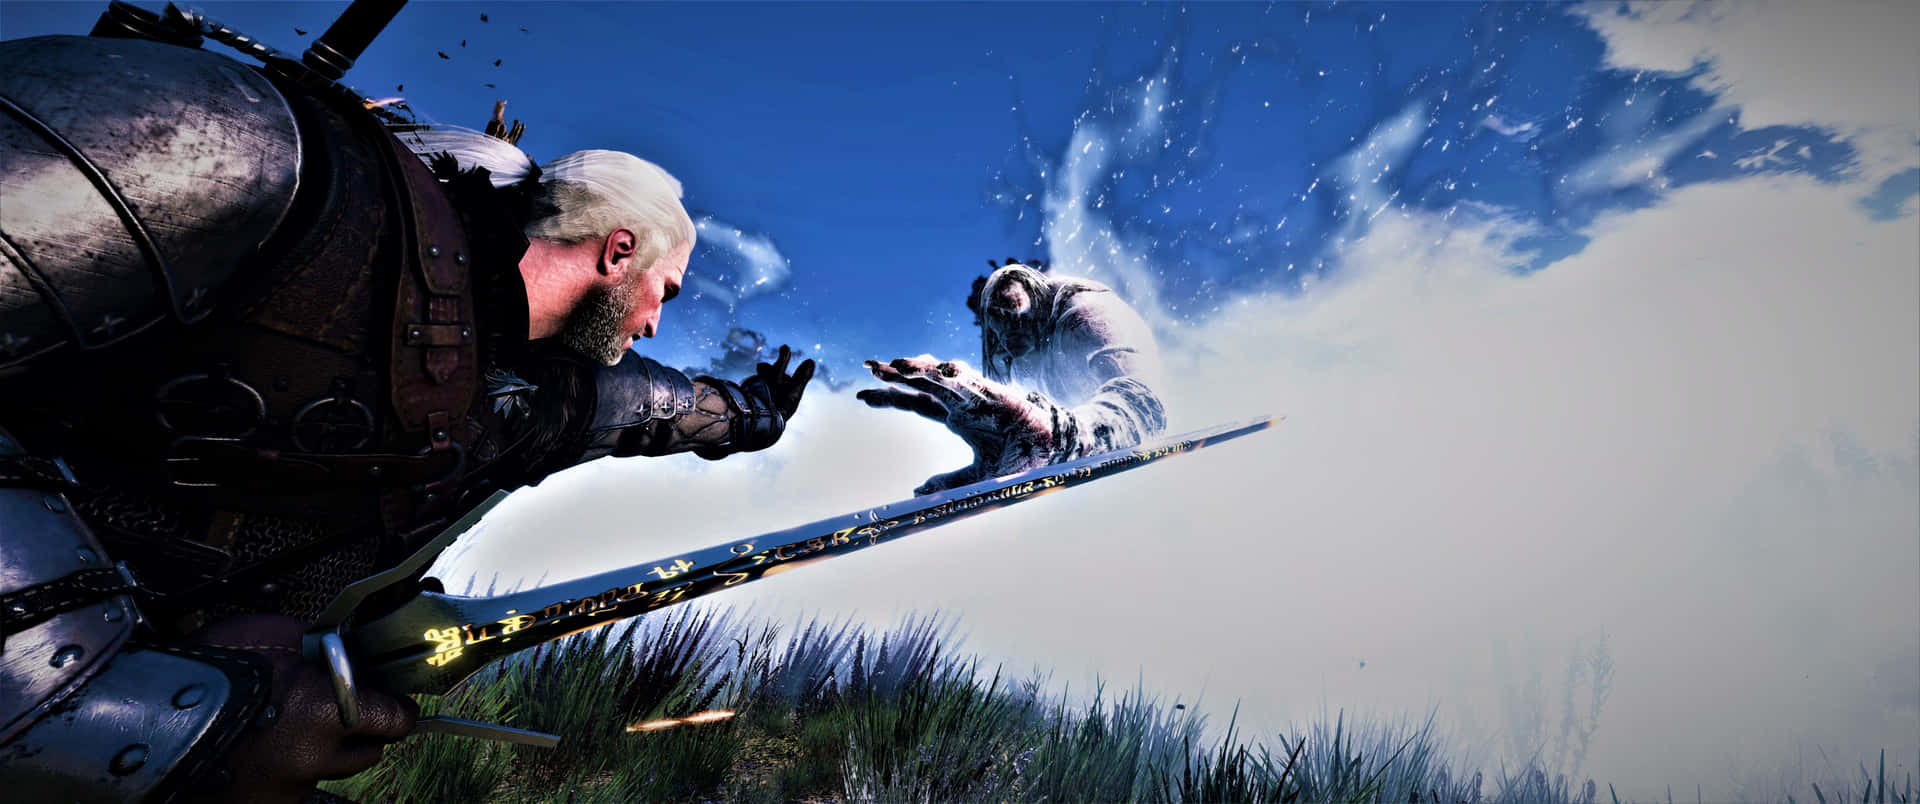 Geralt af Rivia i Witcher videospil. Wallpaper